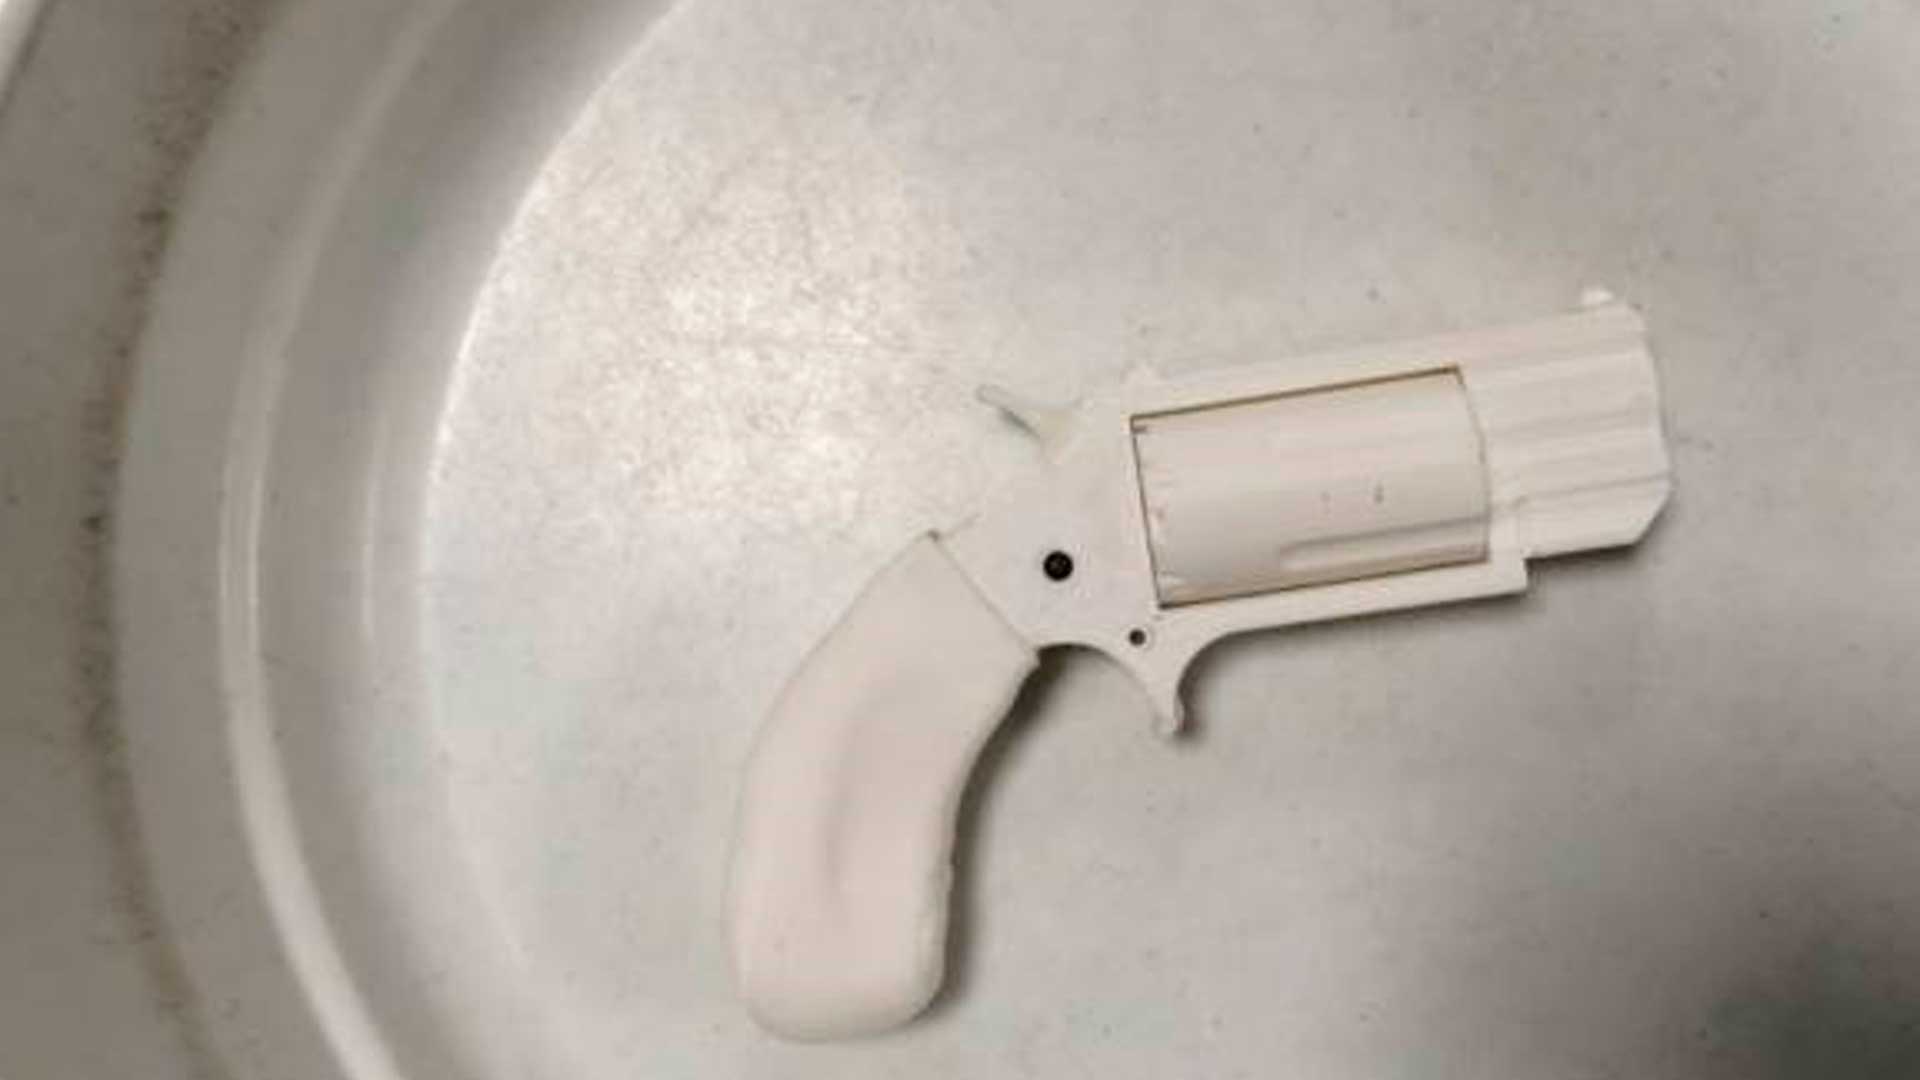 Un juez de EEUU bloquea la autorización para imprimir armas en 3D